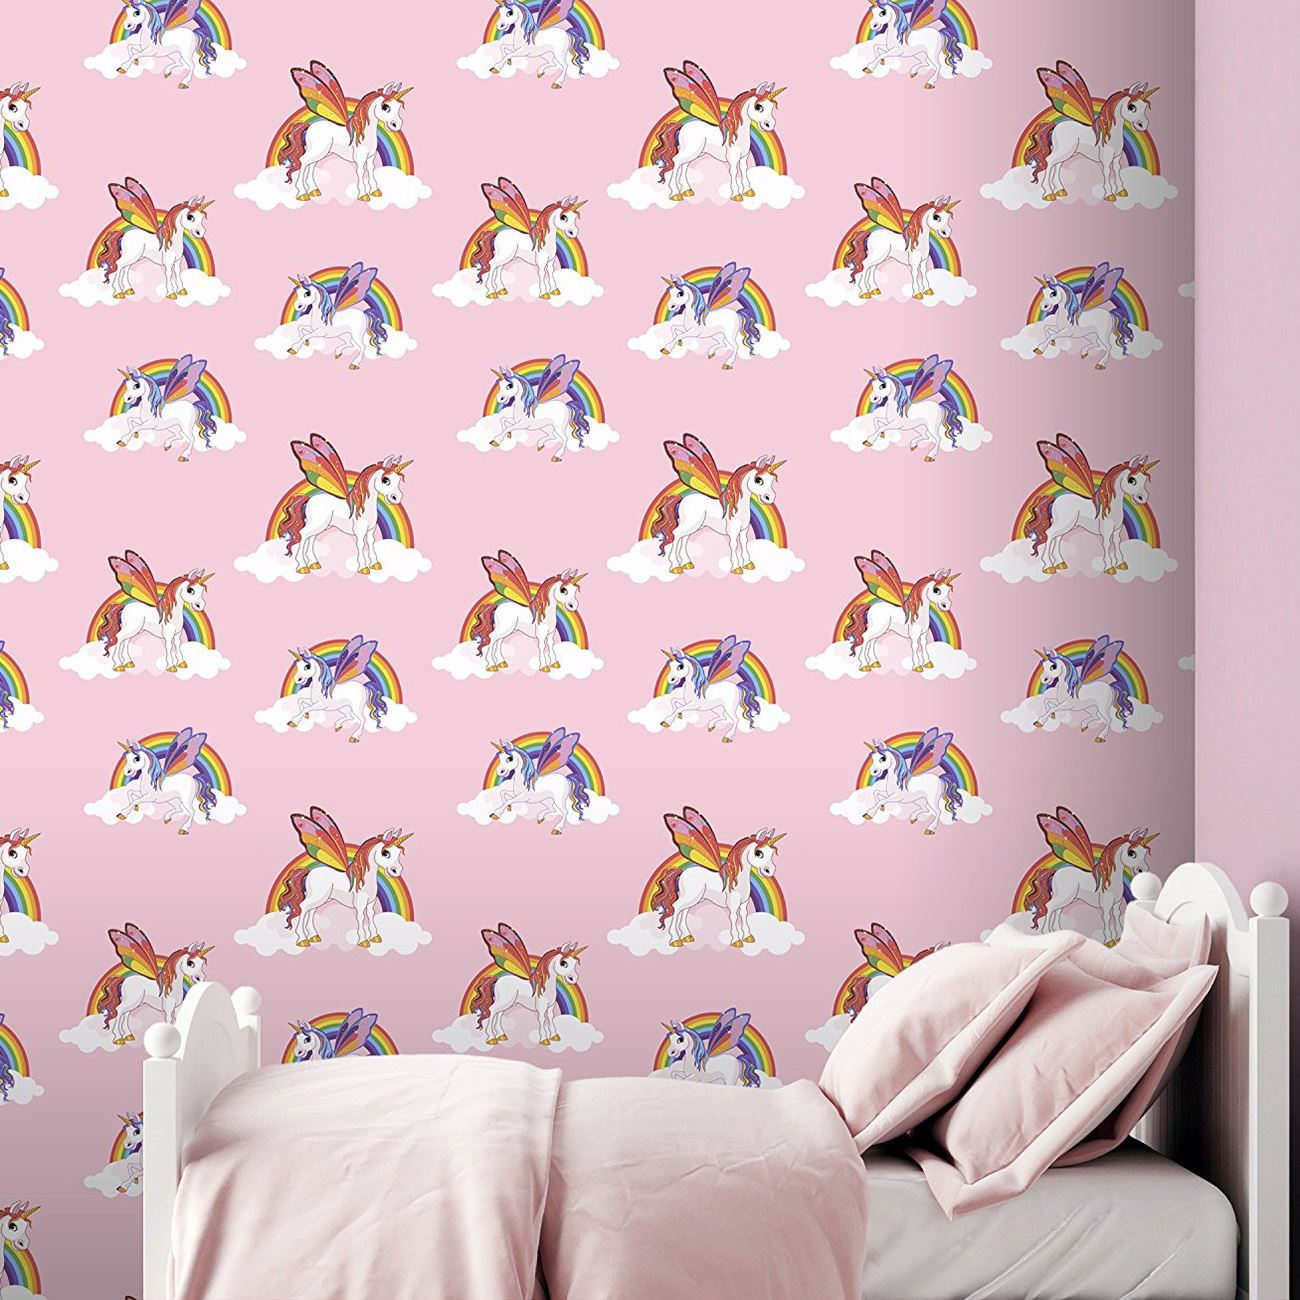 Rainbow Unicorns Wallpaper Kids Girls Room Decor Pink - Unicorn Wallpaper For Walls - HD Wallpaper 